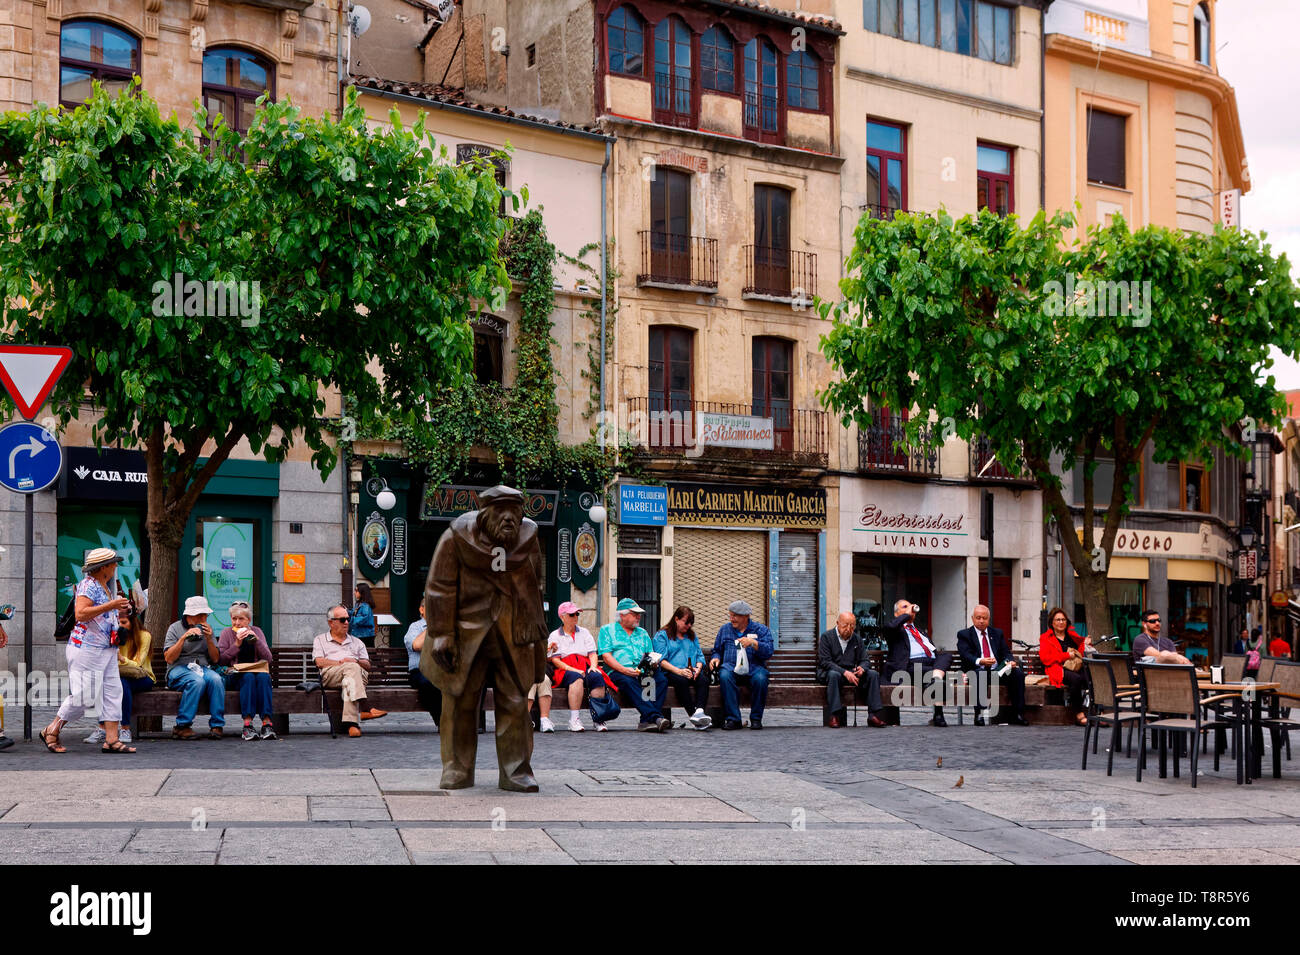 Scena cittadina; gente seduta, statua, vecchi edifici, negozi, tavolo e sedie; sito UNESCO; Europa; Salamanca; Spagna; la molla, orizzontale Foto Stock